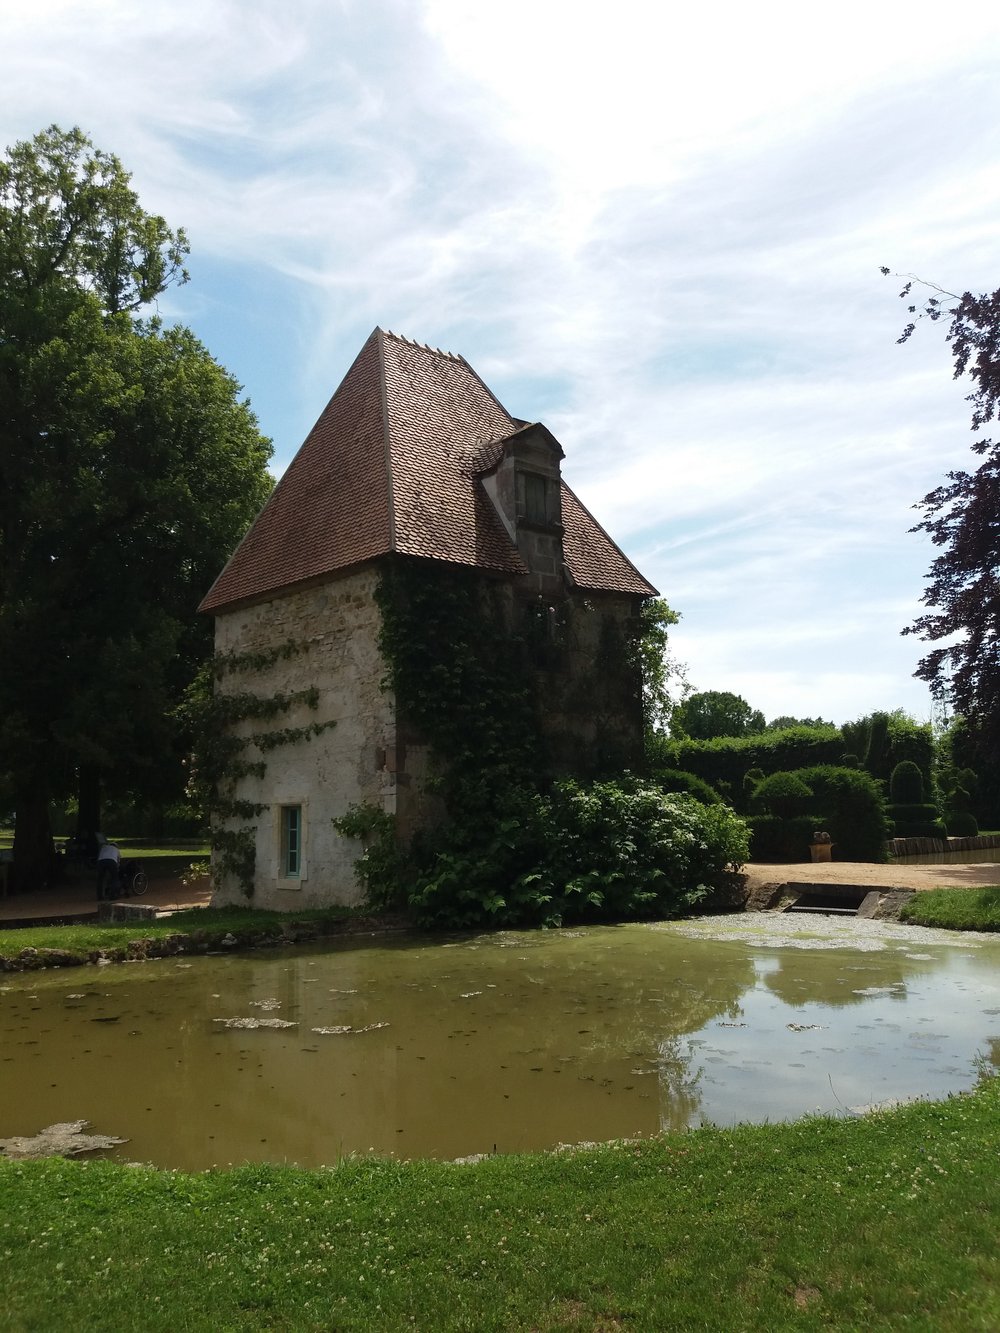 Jardins du château d’ainay le vieil 15pascale coutoux.jpg